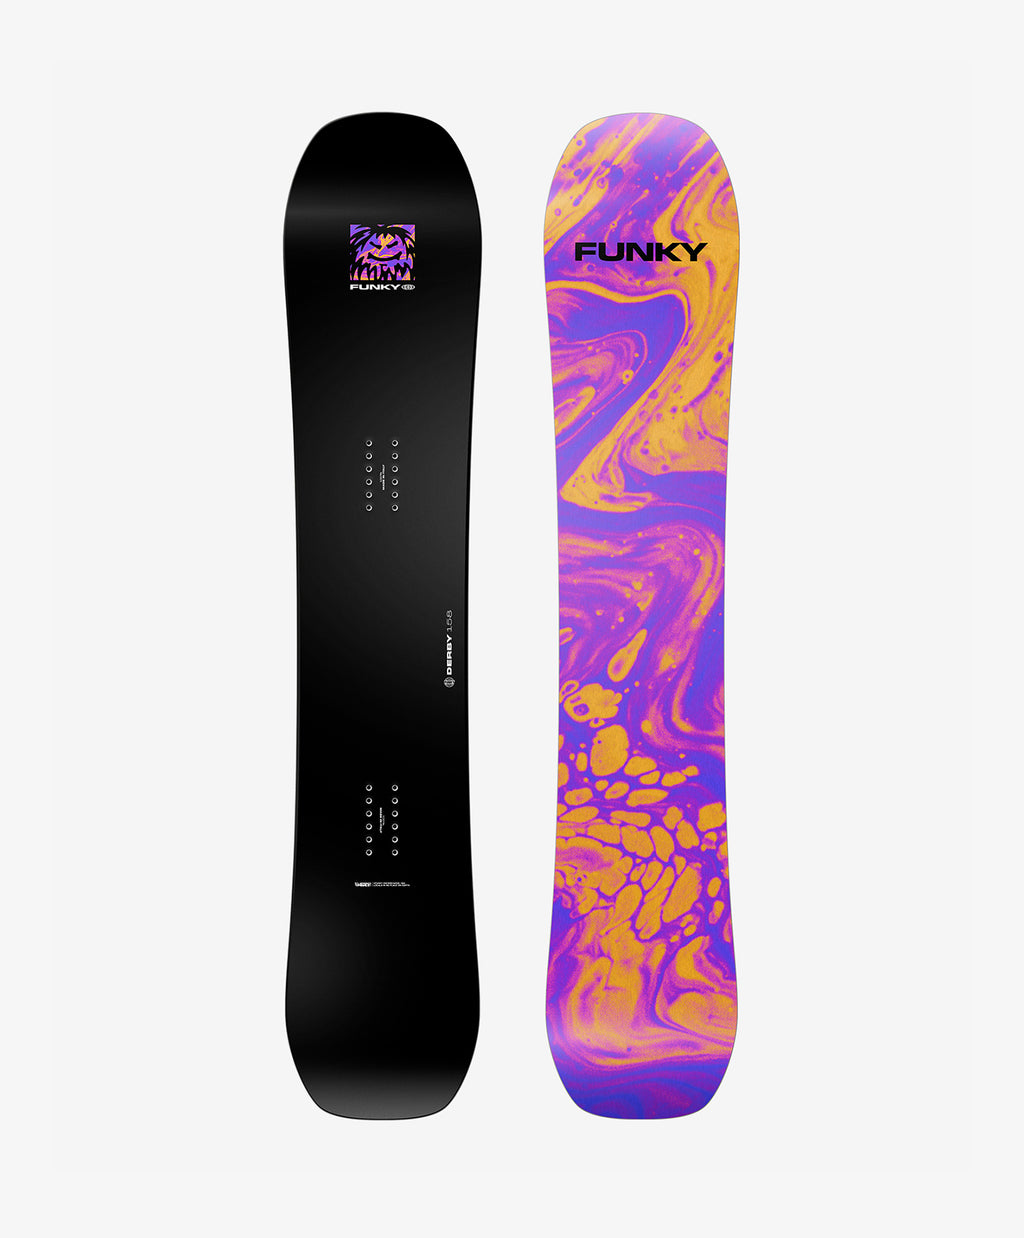 Man’s Funky Derby Snowboard 22/23